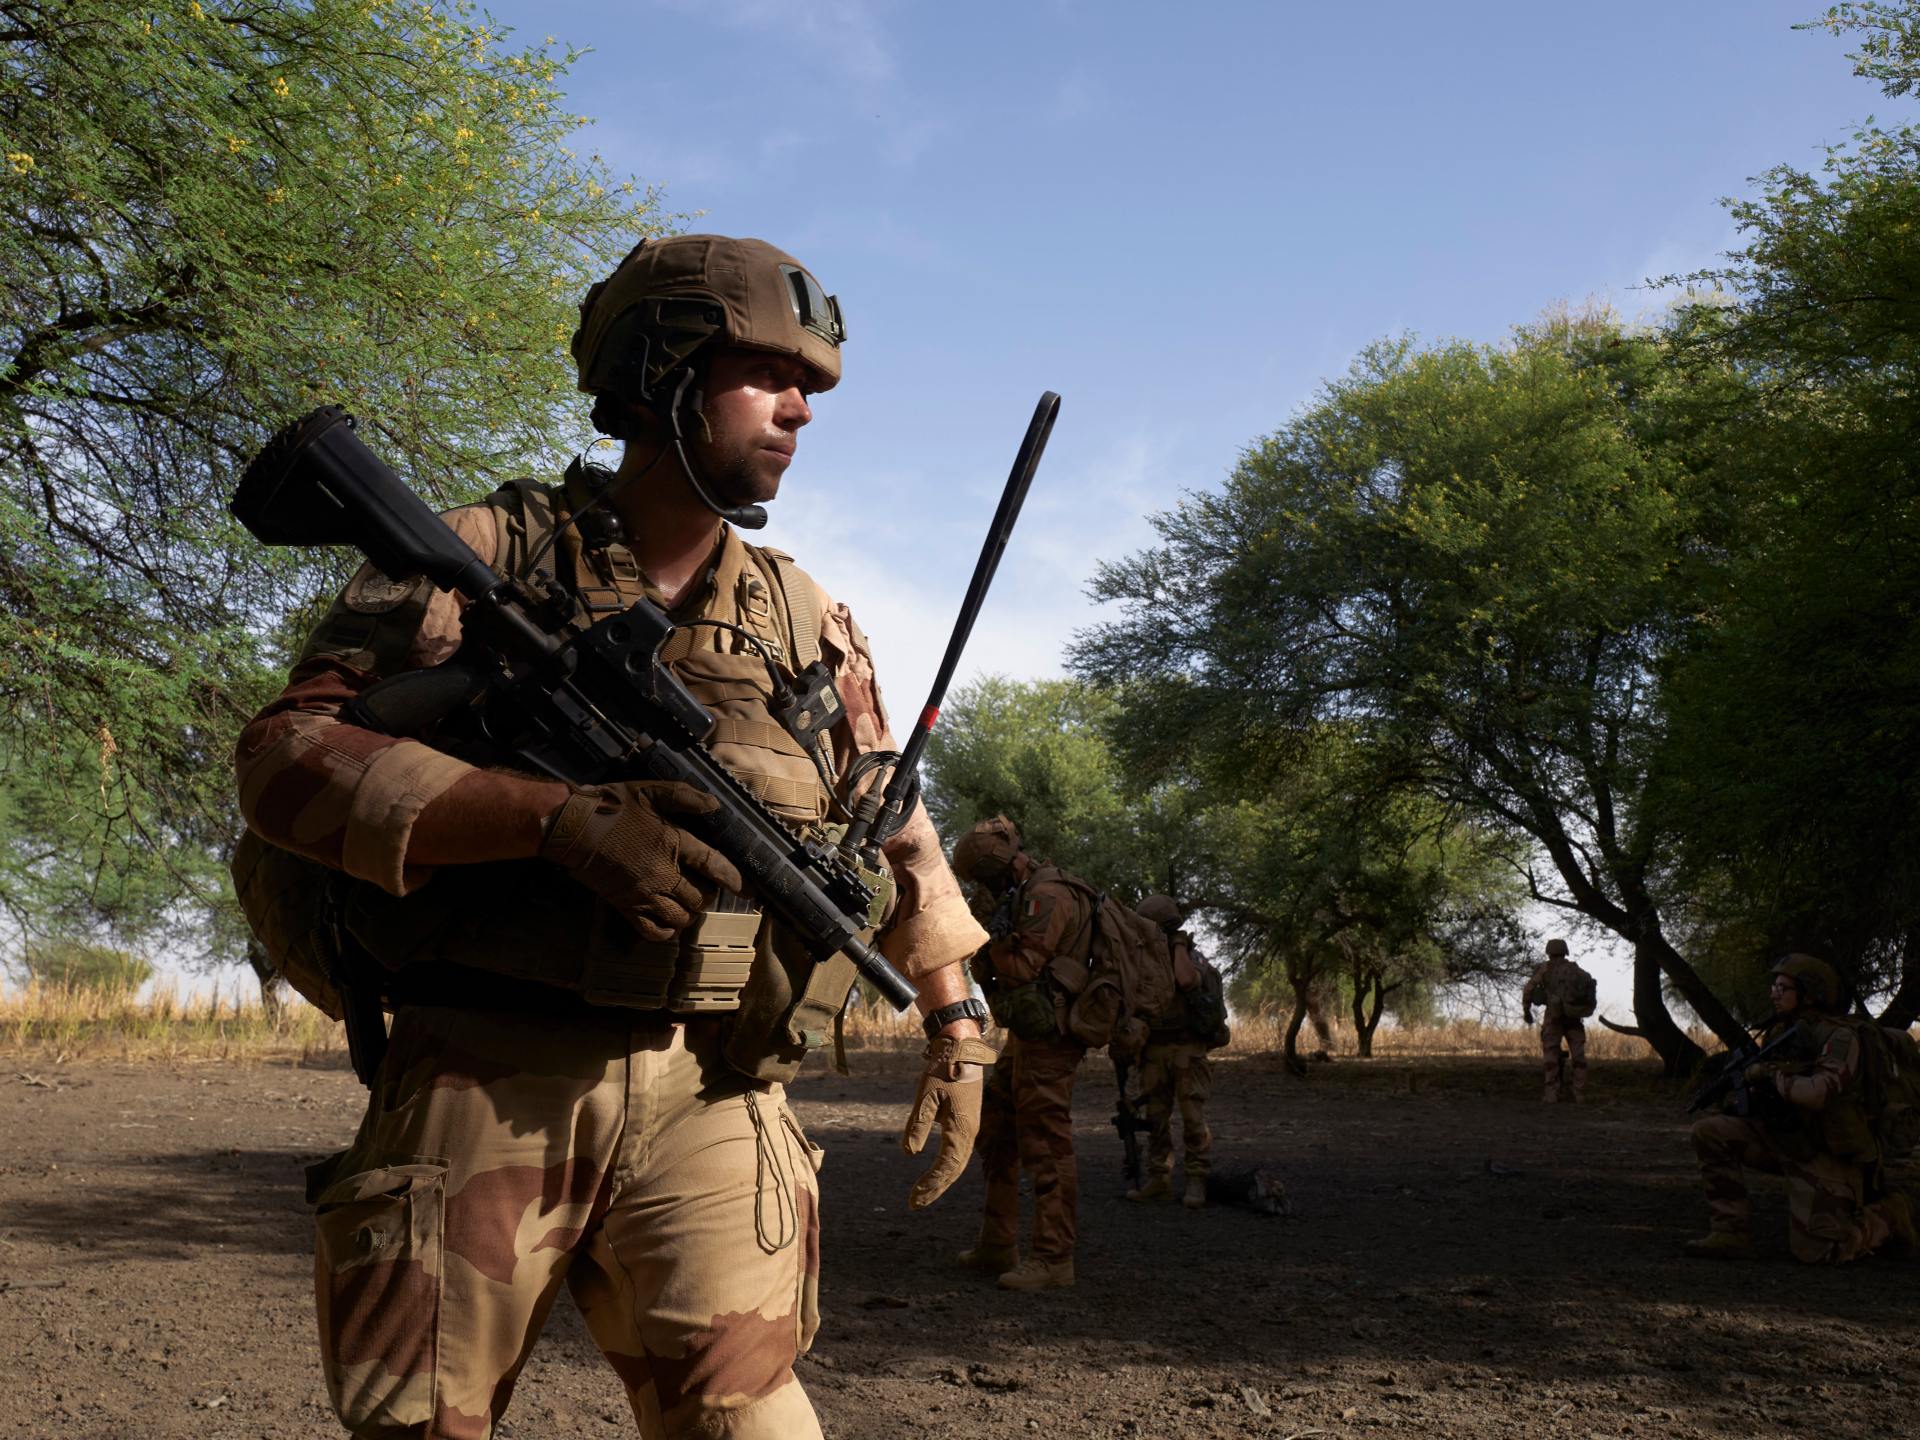 باحث سياسي: آن أوان التساؤل بشأن الوجود العسكري الفرنسي في أفريقيا